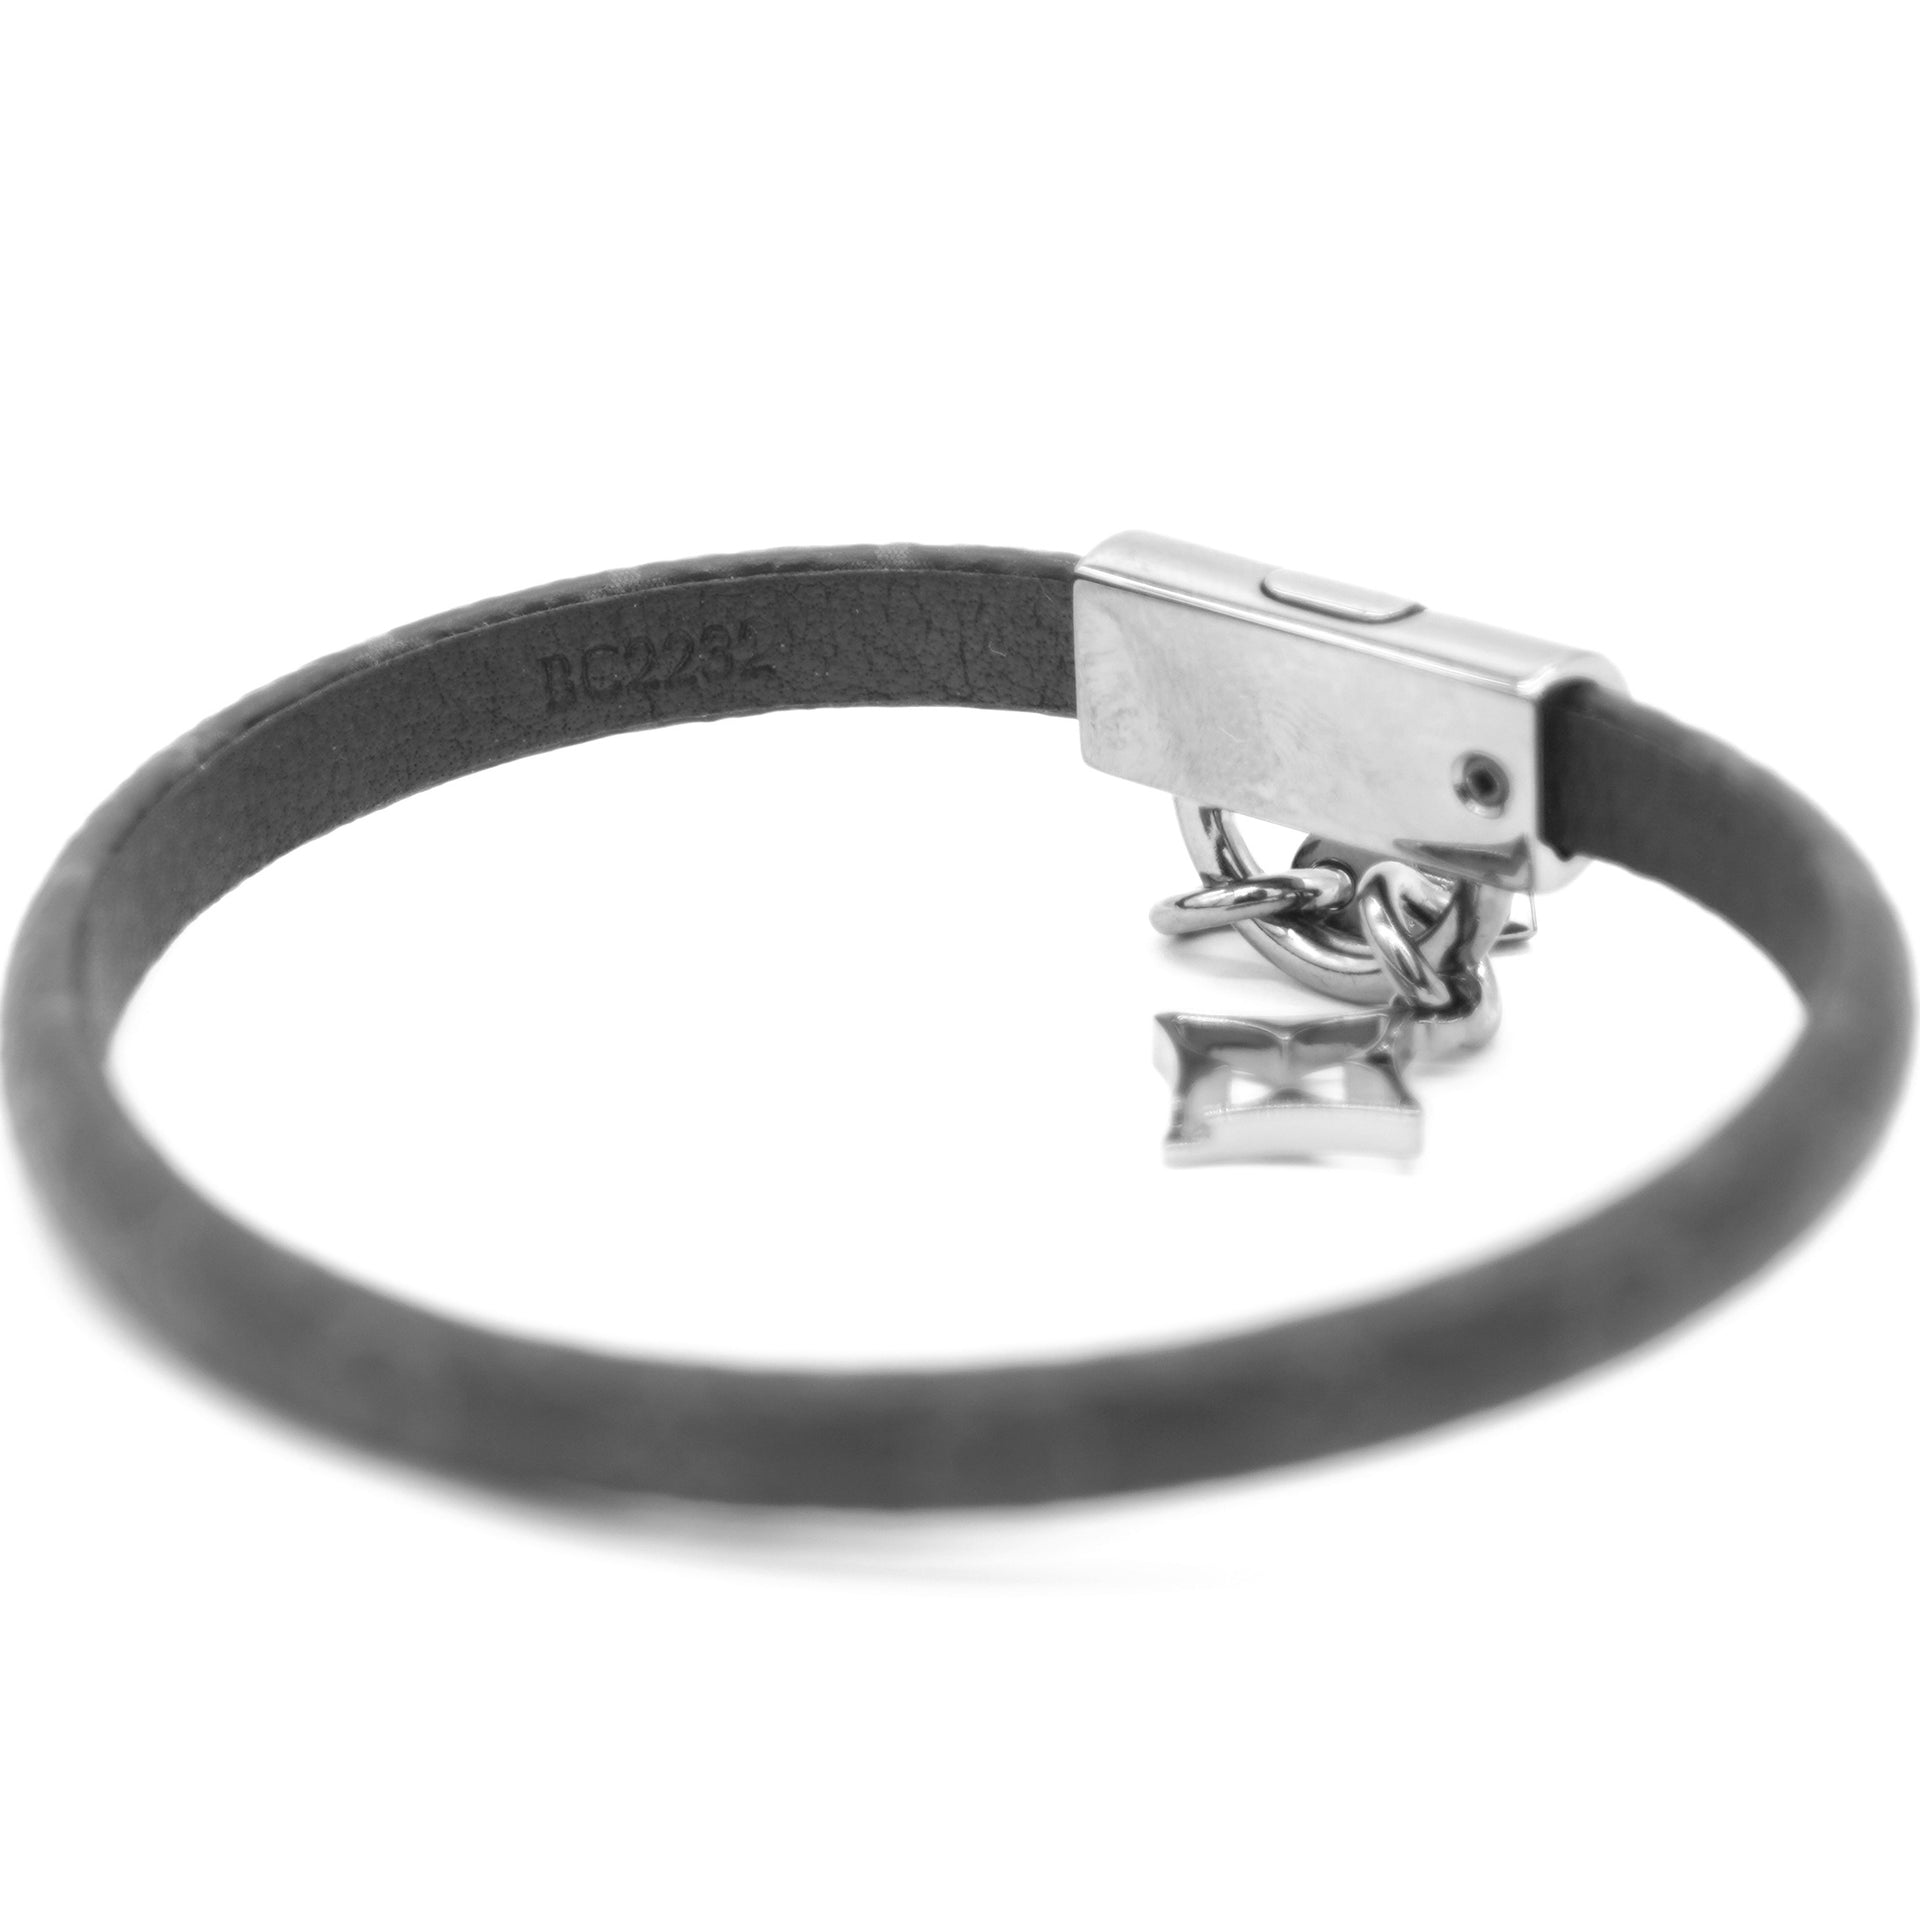 Louis Vuitton - Authenticated Monogram Bracelet - Metal Silver Plain for Women, Good Condition